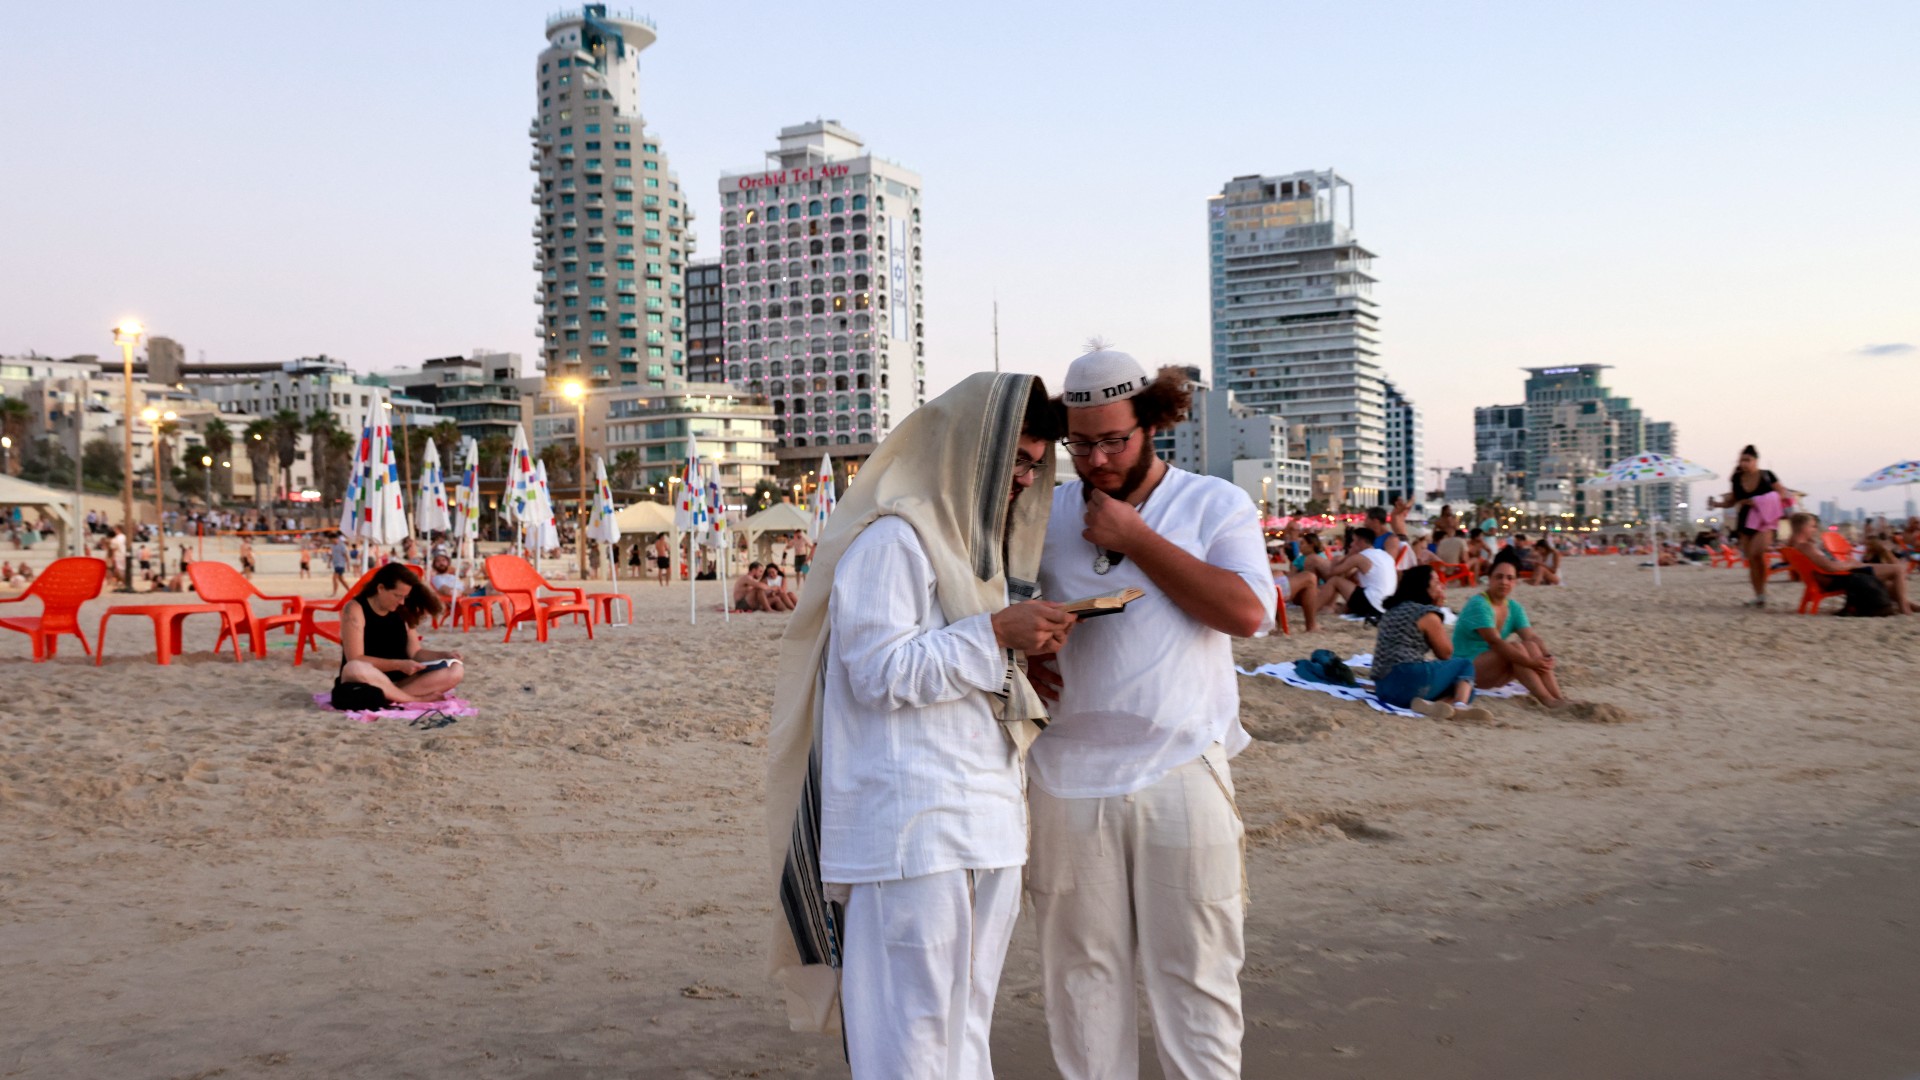 Des religieux lisent un livre sur la côte de Tel Aviv (AFP)